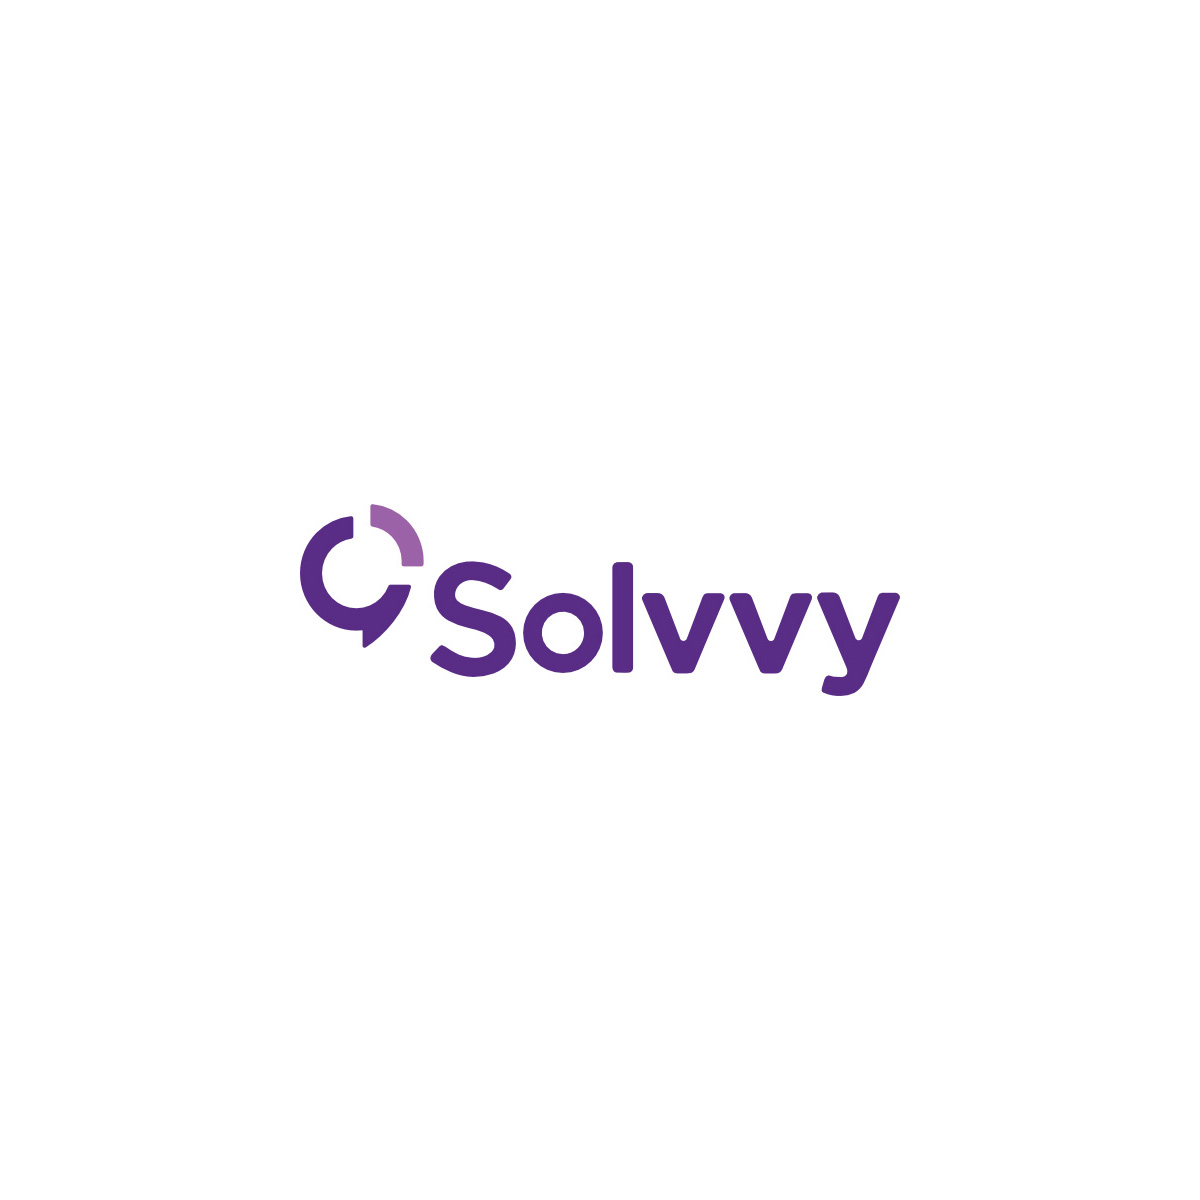 Solvvy Logo